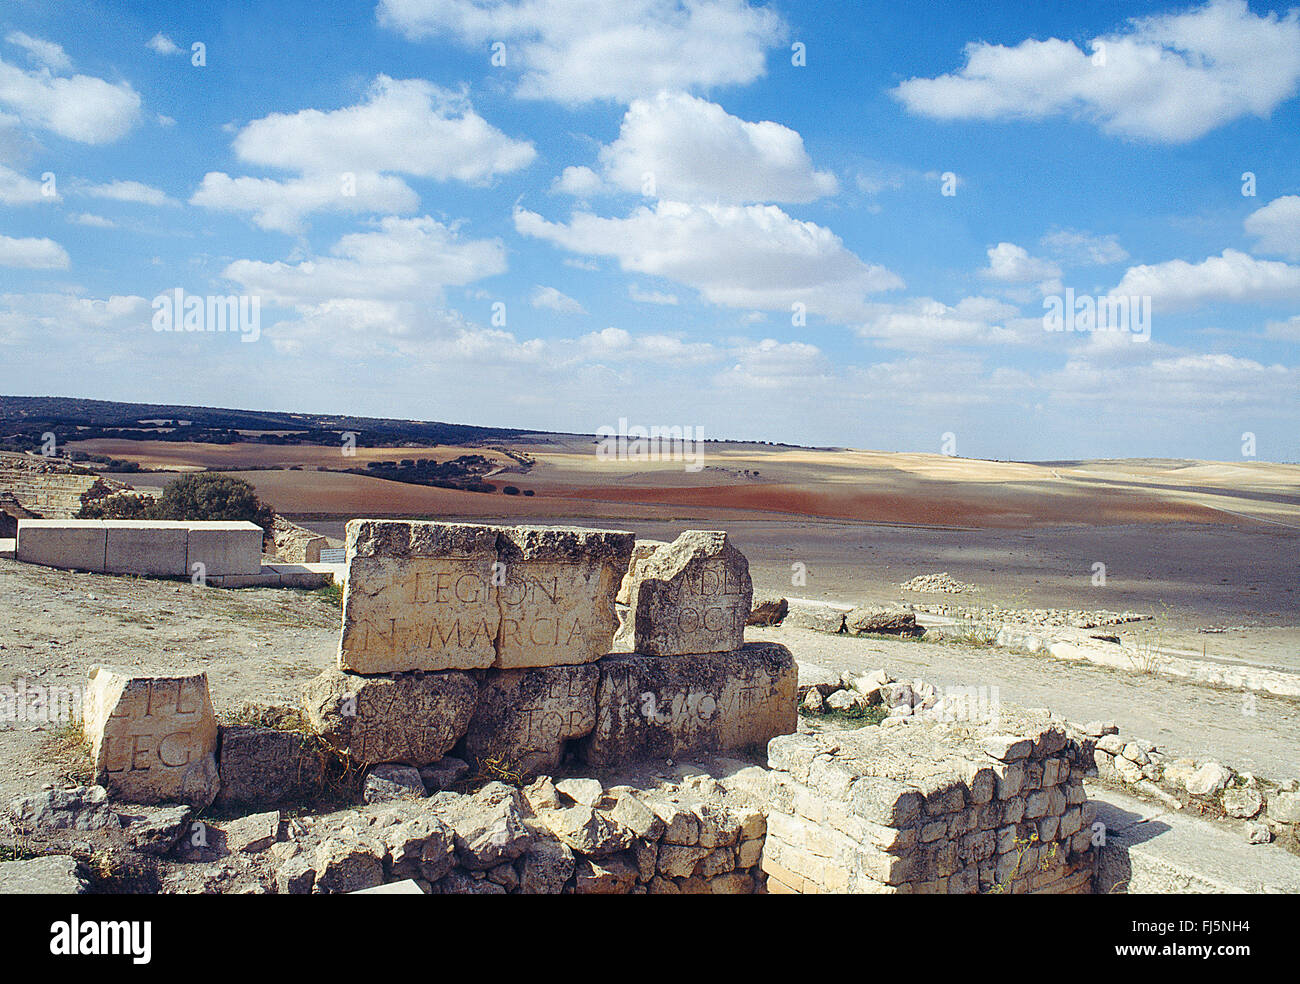 Le rovine romane e il paesaggio. Segobriga parco archeologico, Saelices, Provincia Cuenca, Castilla La Mancha, in Spagna. Foto Stock